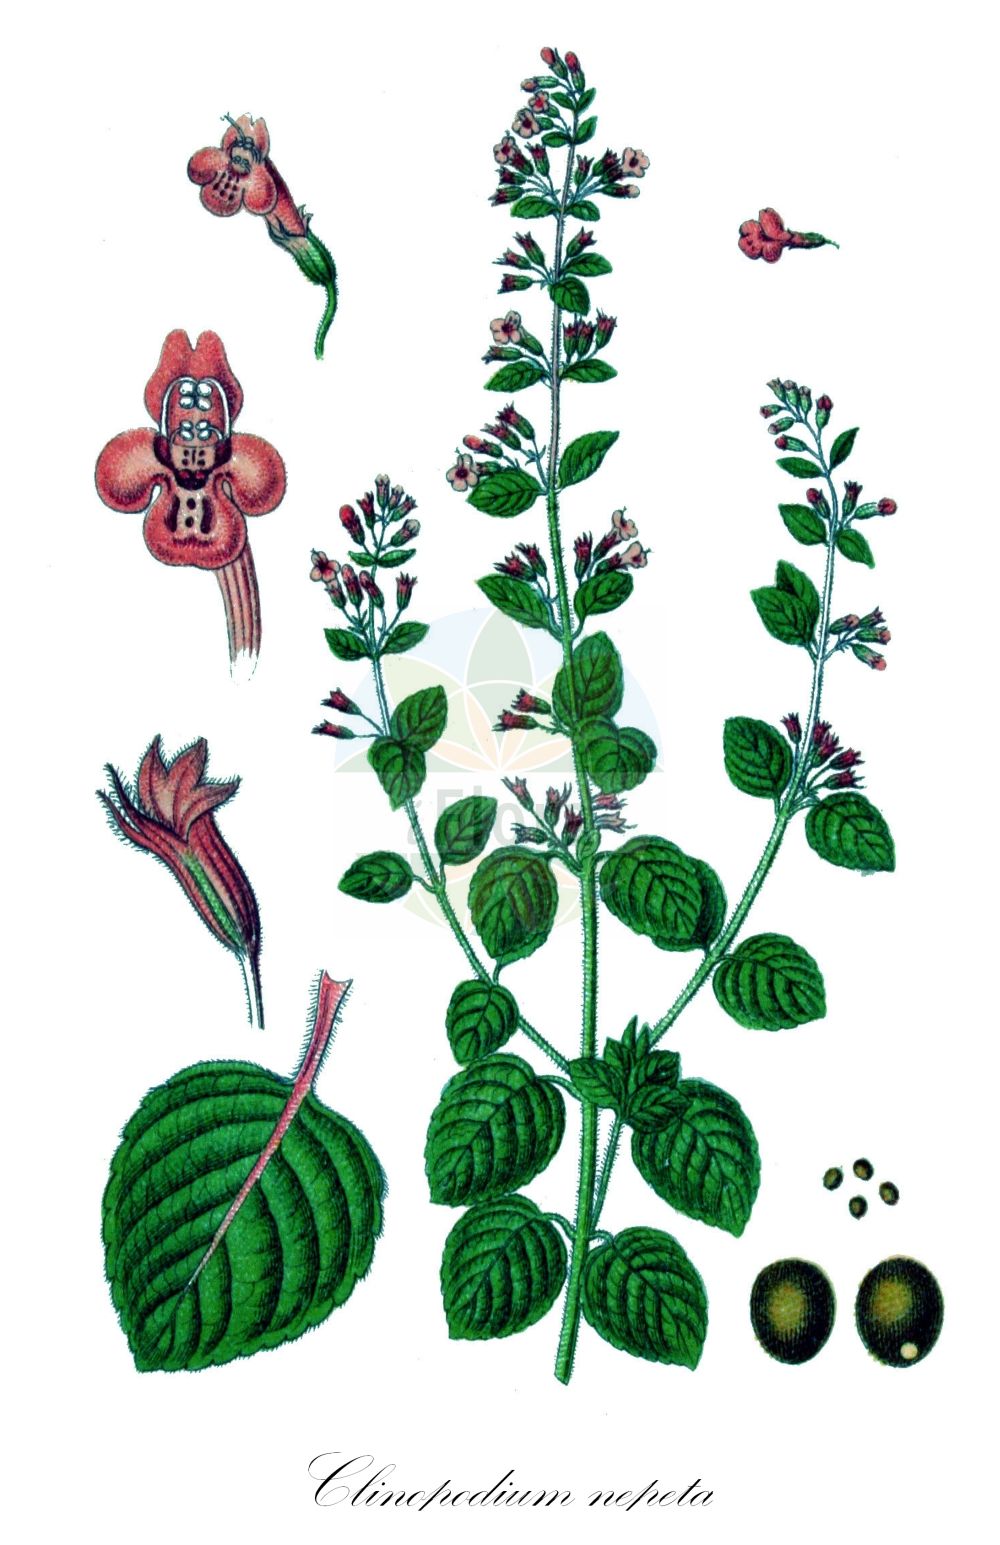 Historische Abbildung von Clinopodium nepeta (Kleinblütige Bergminze - Lesser Calamint). Das Bild zeigt Blatt, Bluete, Frucht und Same. ---- Historical Drawing of Clinopodium nepeta (Kleinblütige Bergminze - Lesser Calamint). The image is showing leaf, flower, fruit and seed.(Clinopodium nepeta,Kleinblütige Bergminze,Lesser Calamint,Calamintha nepeta,Calamintha parviflora,Clinopodium nepeta,Melissa nepeta,Melissa parviflora,Satureja nepeta,Thymus nepeta,Kleinbluetige Bergminze,Katzenminzenartige Bergminze,Lesser Calamint,Calamint,Field Balm,Field Calamint,Small-flowered Calamint,Clinopodium,Wirbeldost,Calamint,Lamiaceae,Lippenblütengewächse,Nettle family,Blatt,Bluete,Frucht,Same,leaf,flower,fruit,seed,Sturm (1796f))